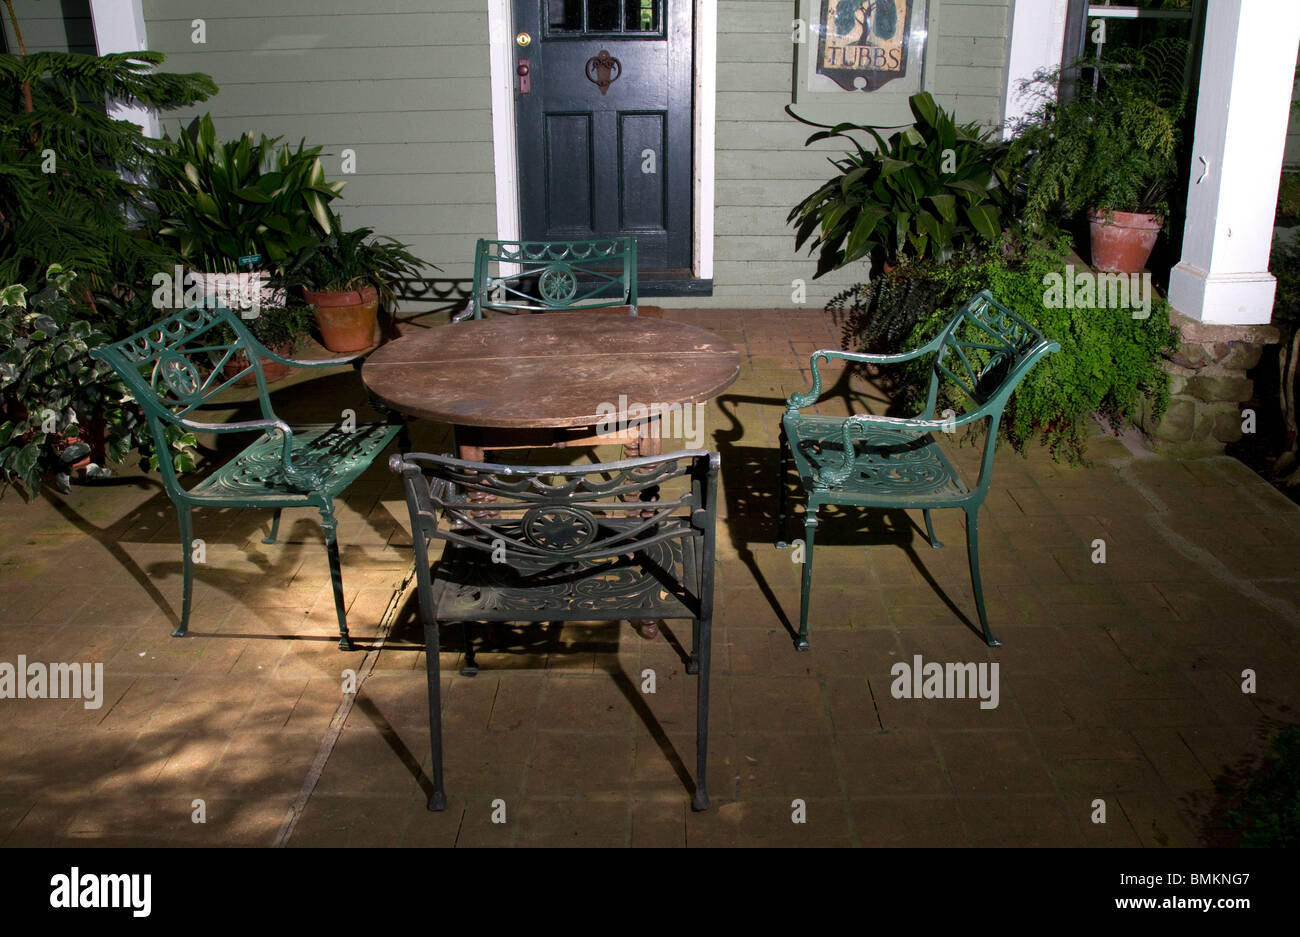 En la veranda cuatro sillas de hierro forjado, una mesa y plantas en macetas. Foto de stock